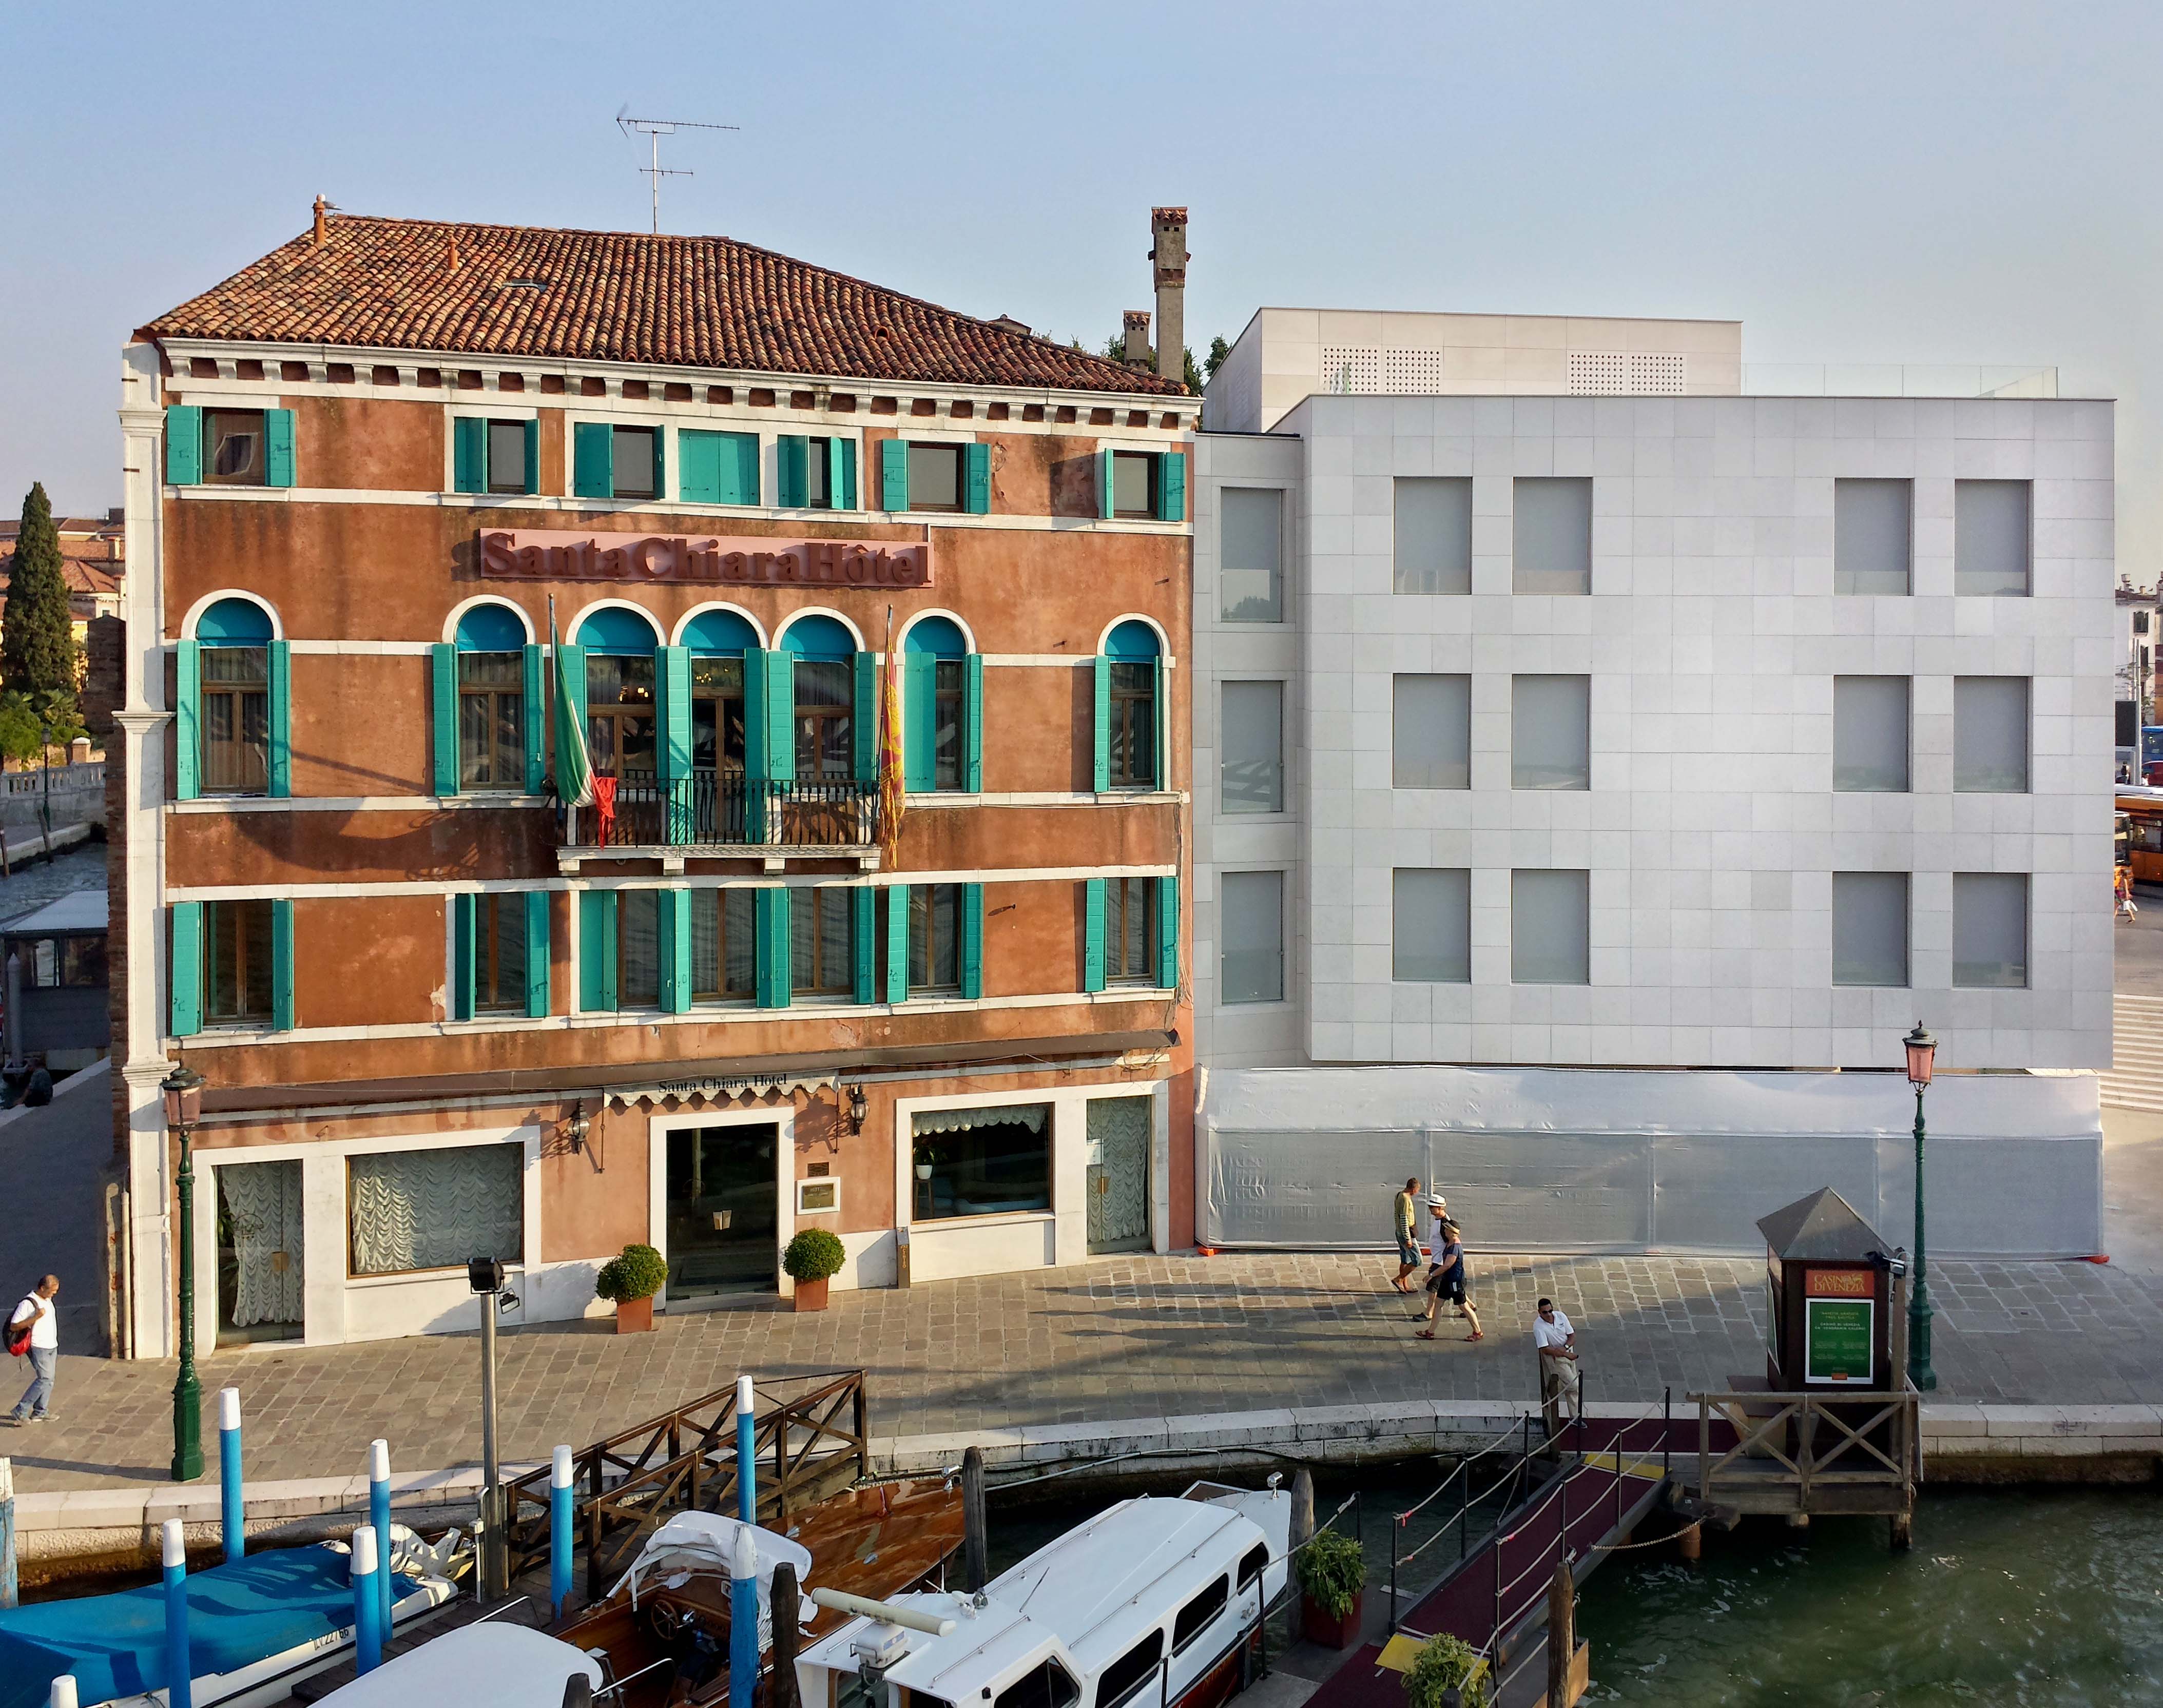 A la meditación base Endurecer Ancora sull'Hotel Santa Chiara a Venezia | Artribune